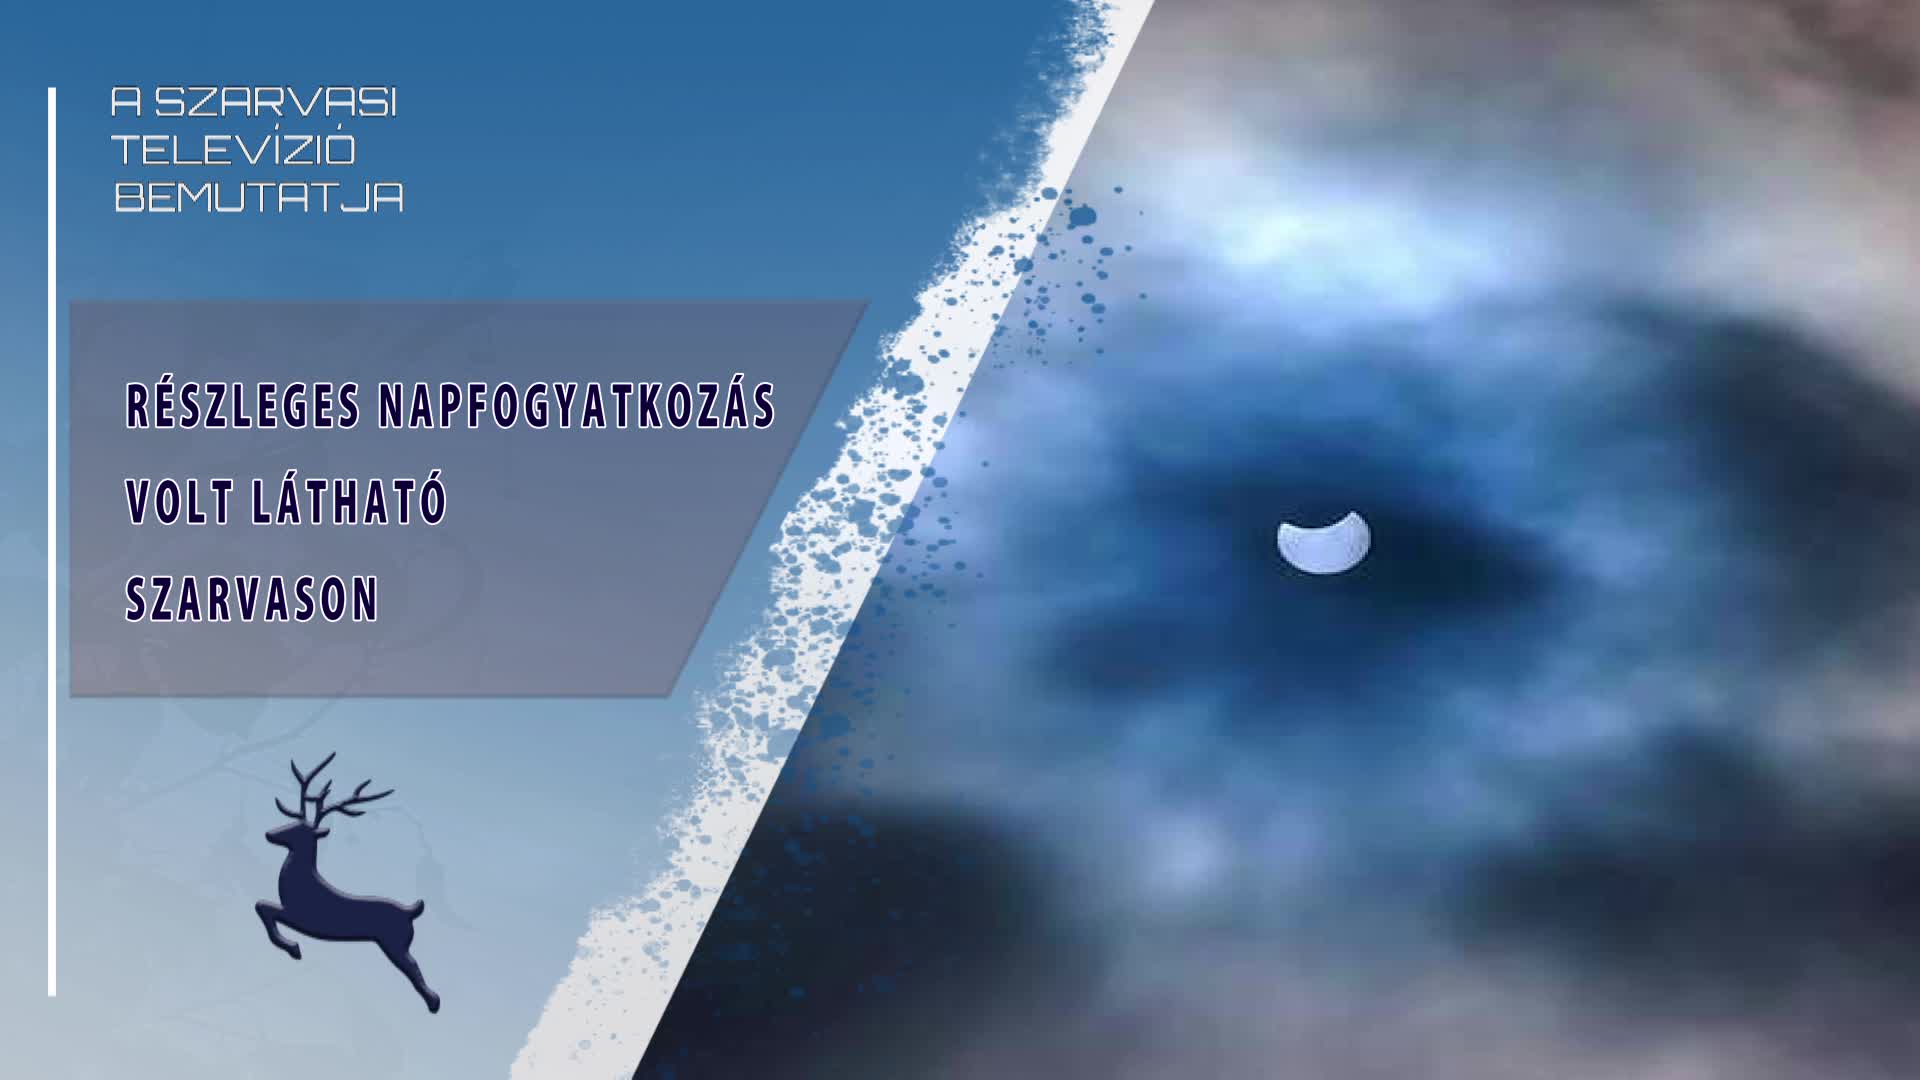 Részleges napfogyatkozás volt látható Szarvason (2022.10.25)